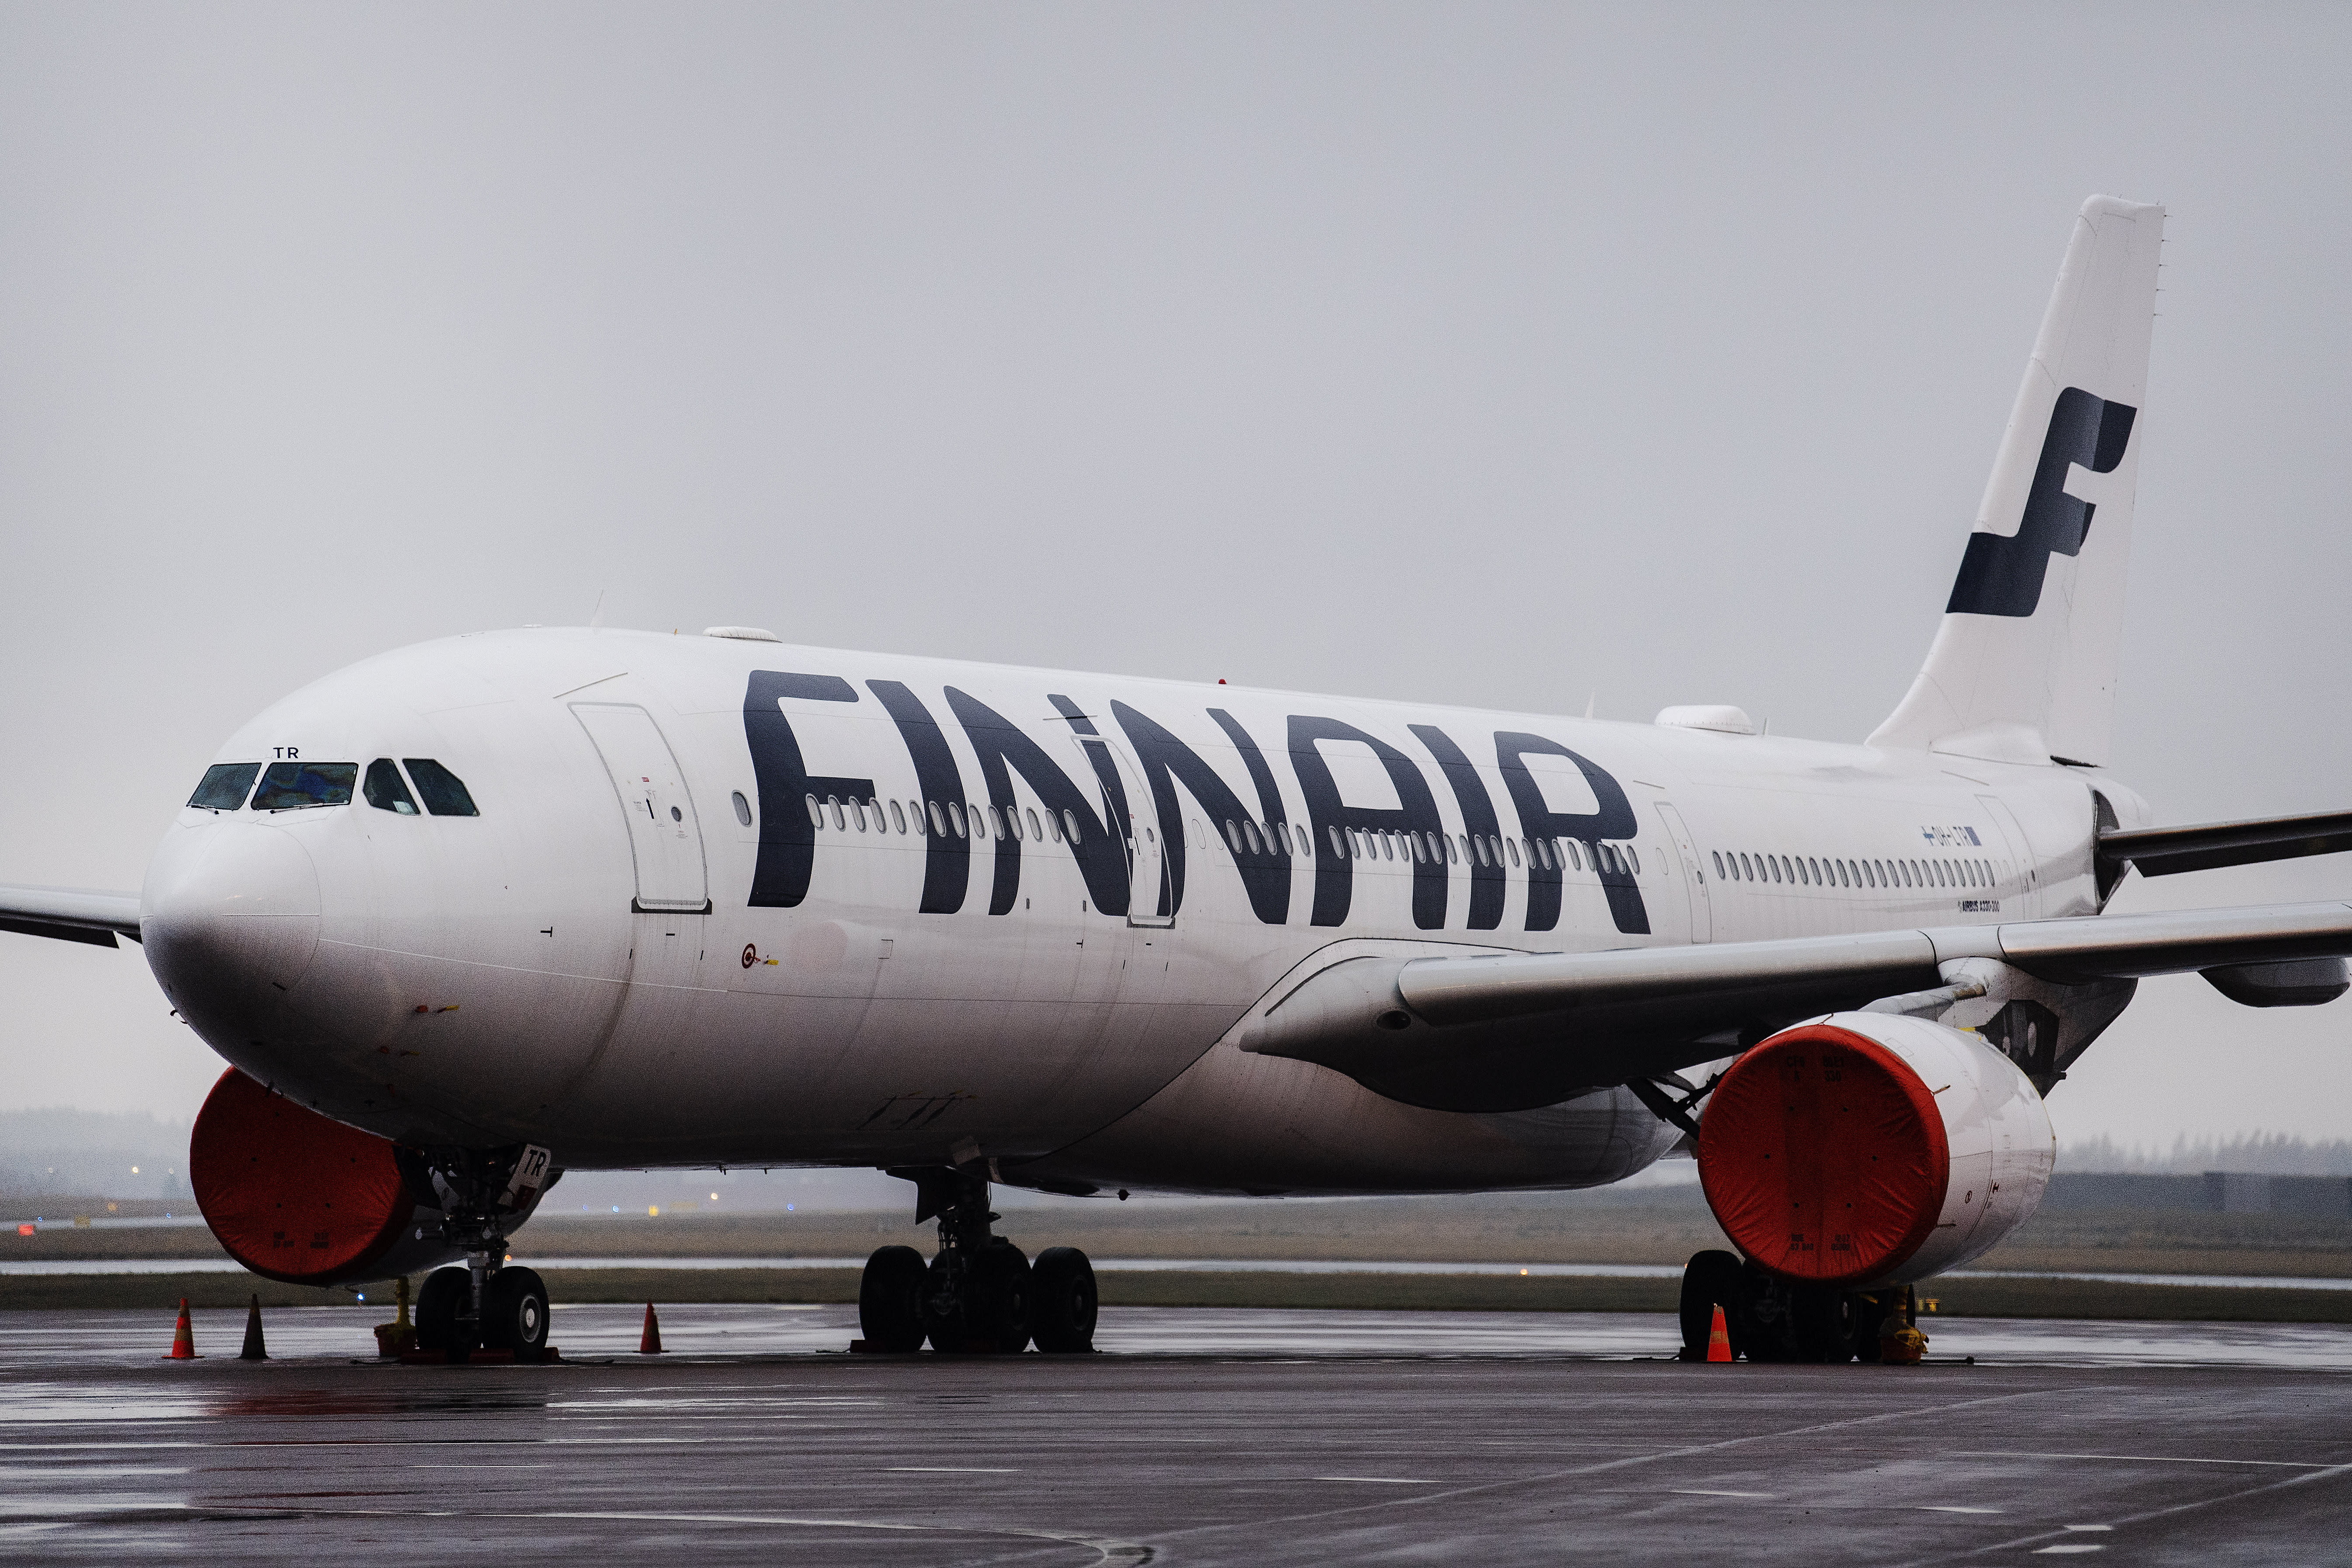 Q1-Ergebnisse: Finnair startet Kostensparprogramm, Telia setzt Finnland an erste Stelle